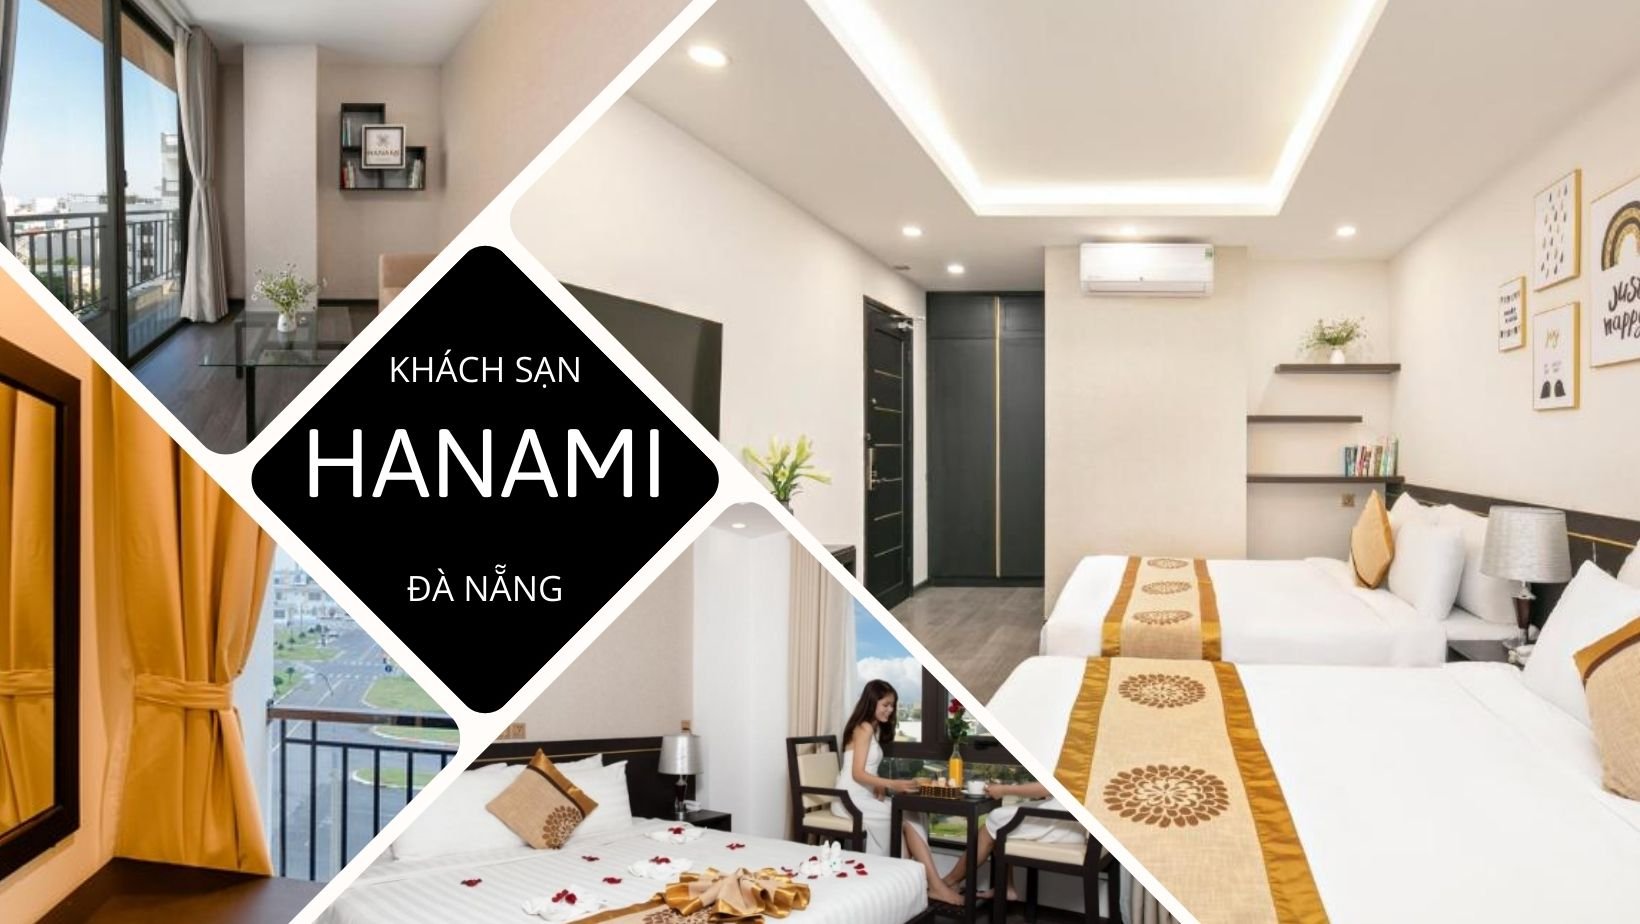 Hanami Hotel Danang được vận hành bởi công ty Hana Hotel Travel Company.